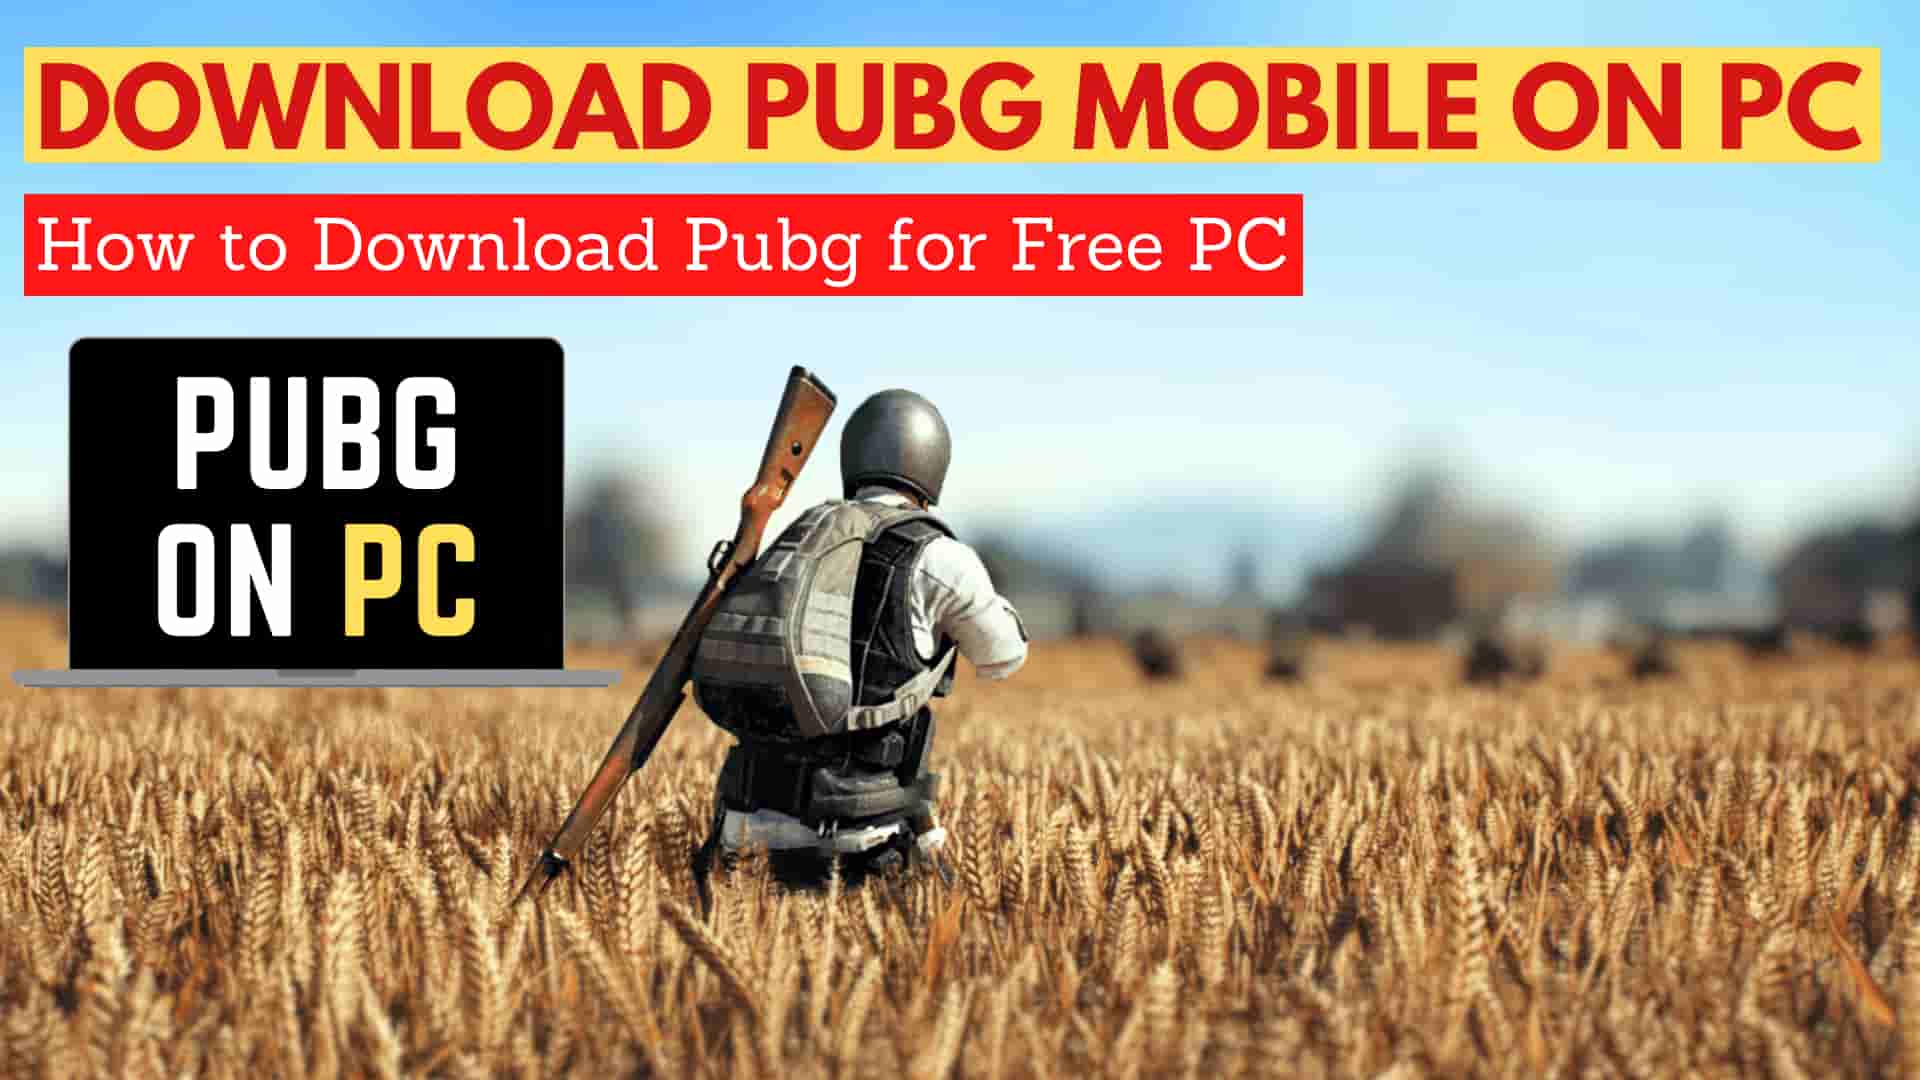 download pubg mobile mac emulator